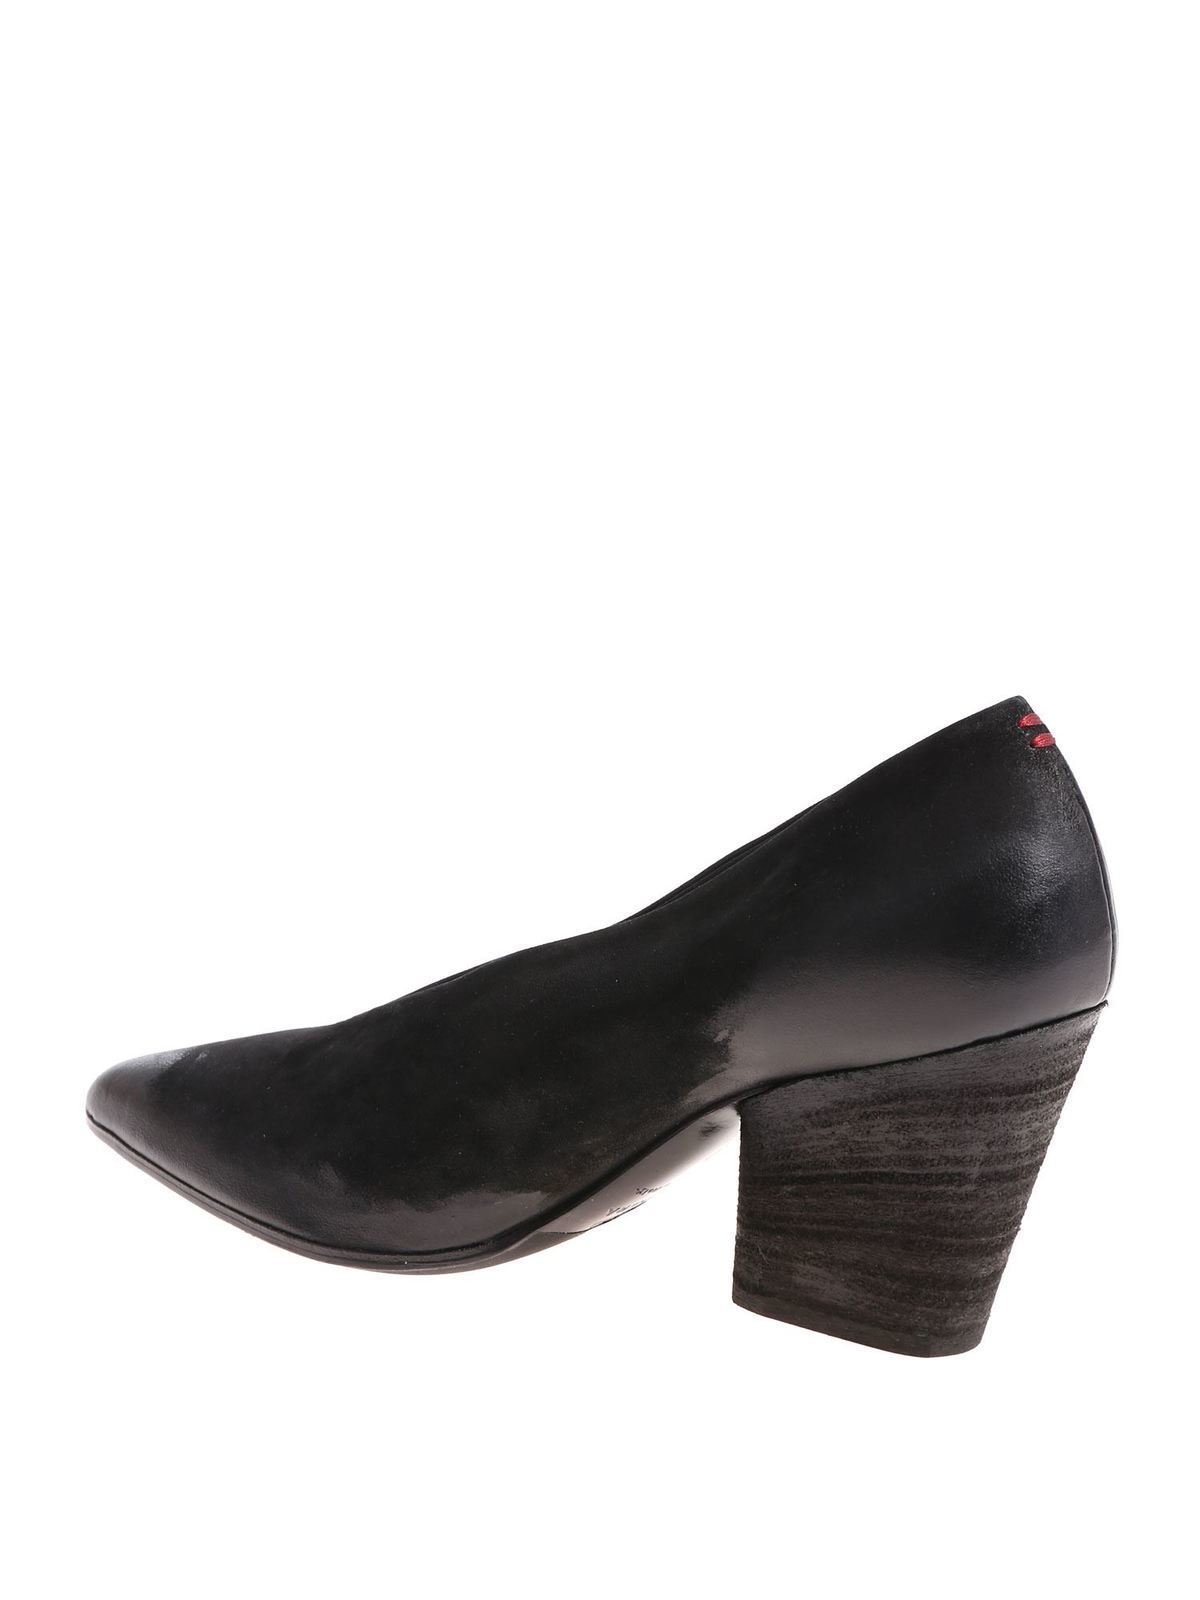 Halmanera - Handmade black Rouge01 shoes - مجلسی پاشنه 3 سانتی -  ROUGE01BANDOLERONERO